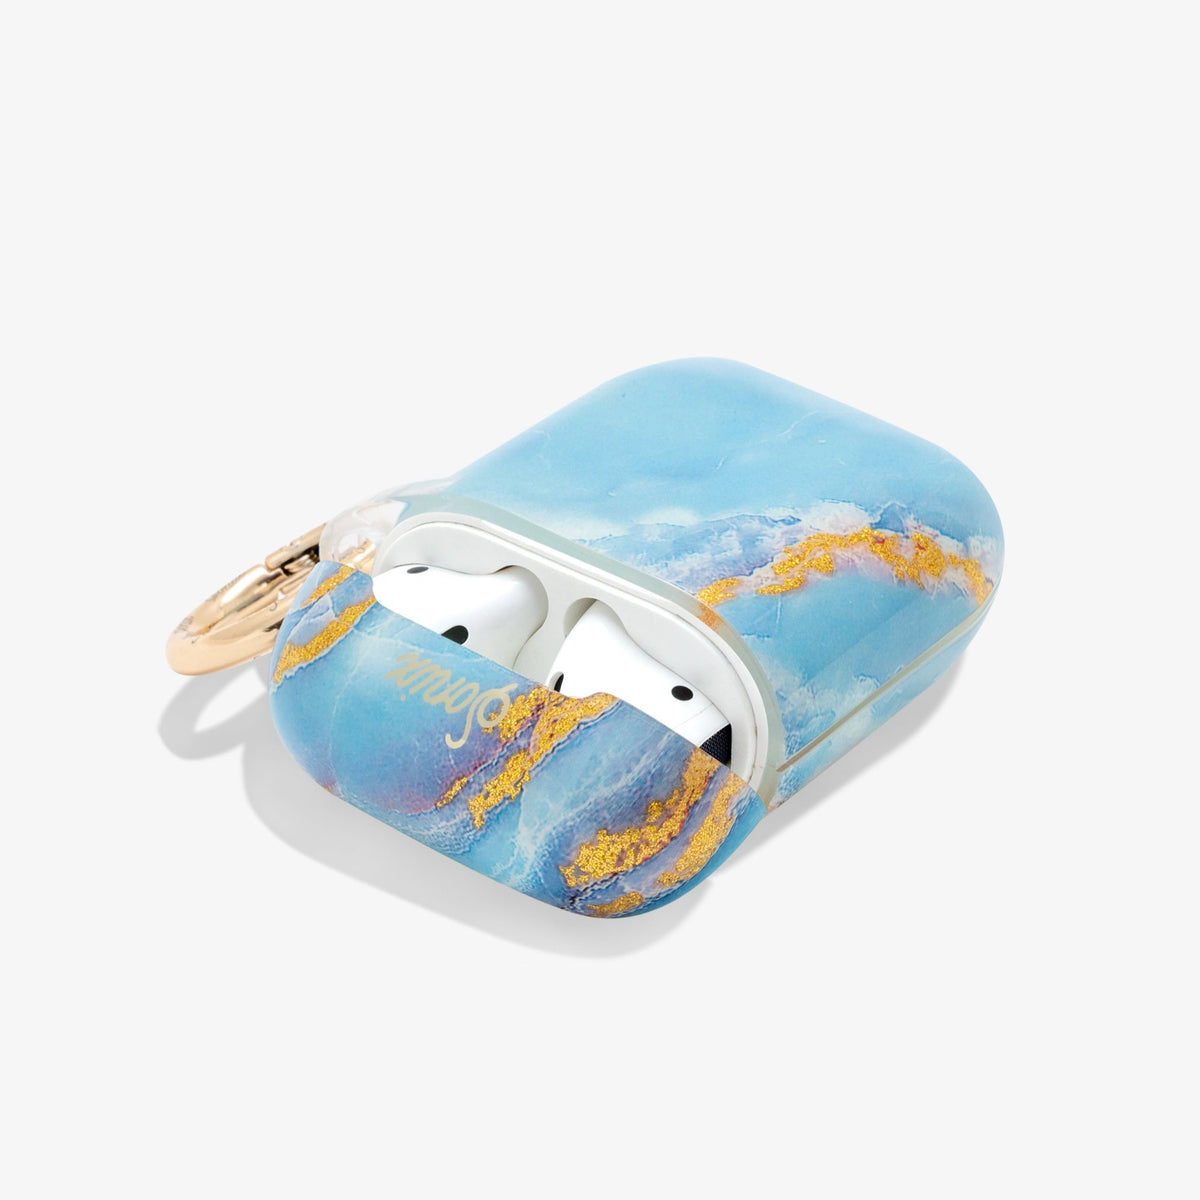 Sonix Hard Cover Protective Case fits Apple AirPods Pro - Confetti  (Terrazzo)